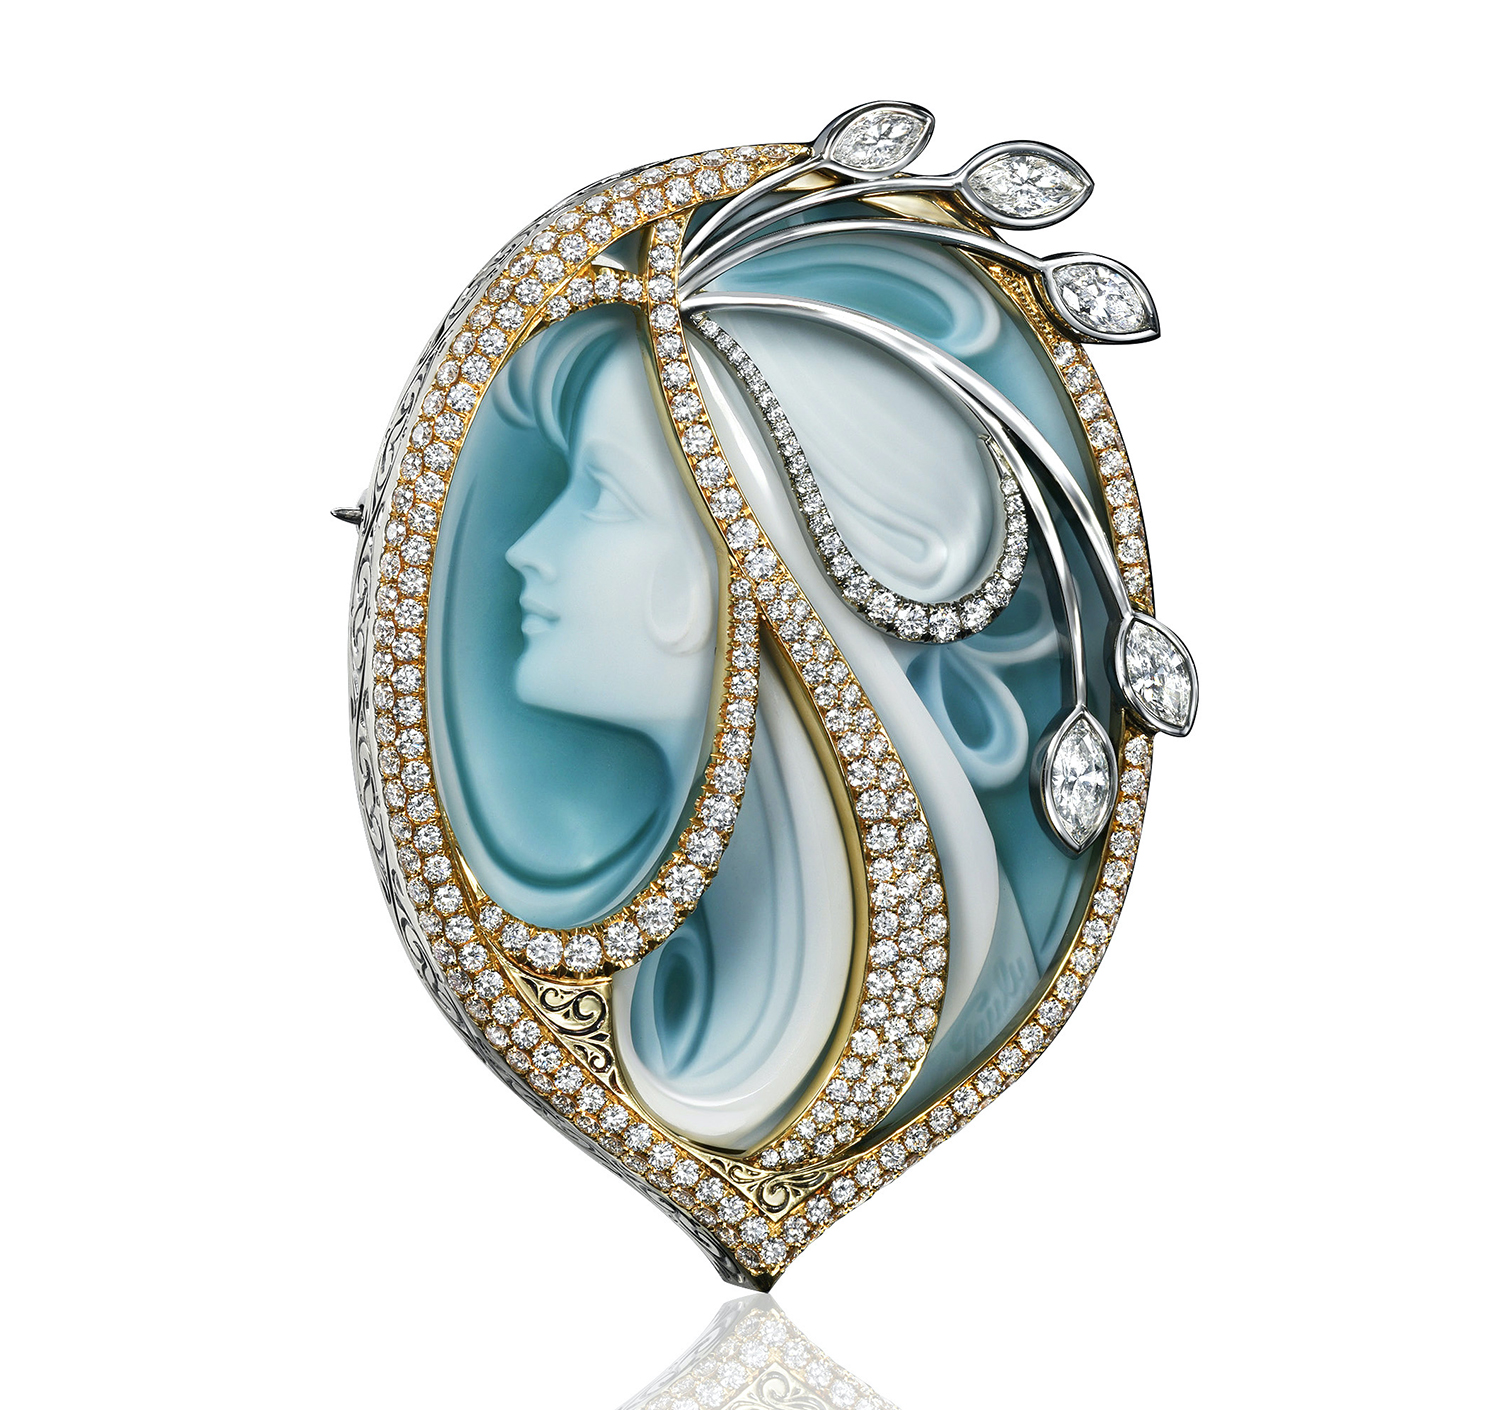 INSTORE Design Awards 2022 – Diamond Jewelry Over $5,000